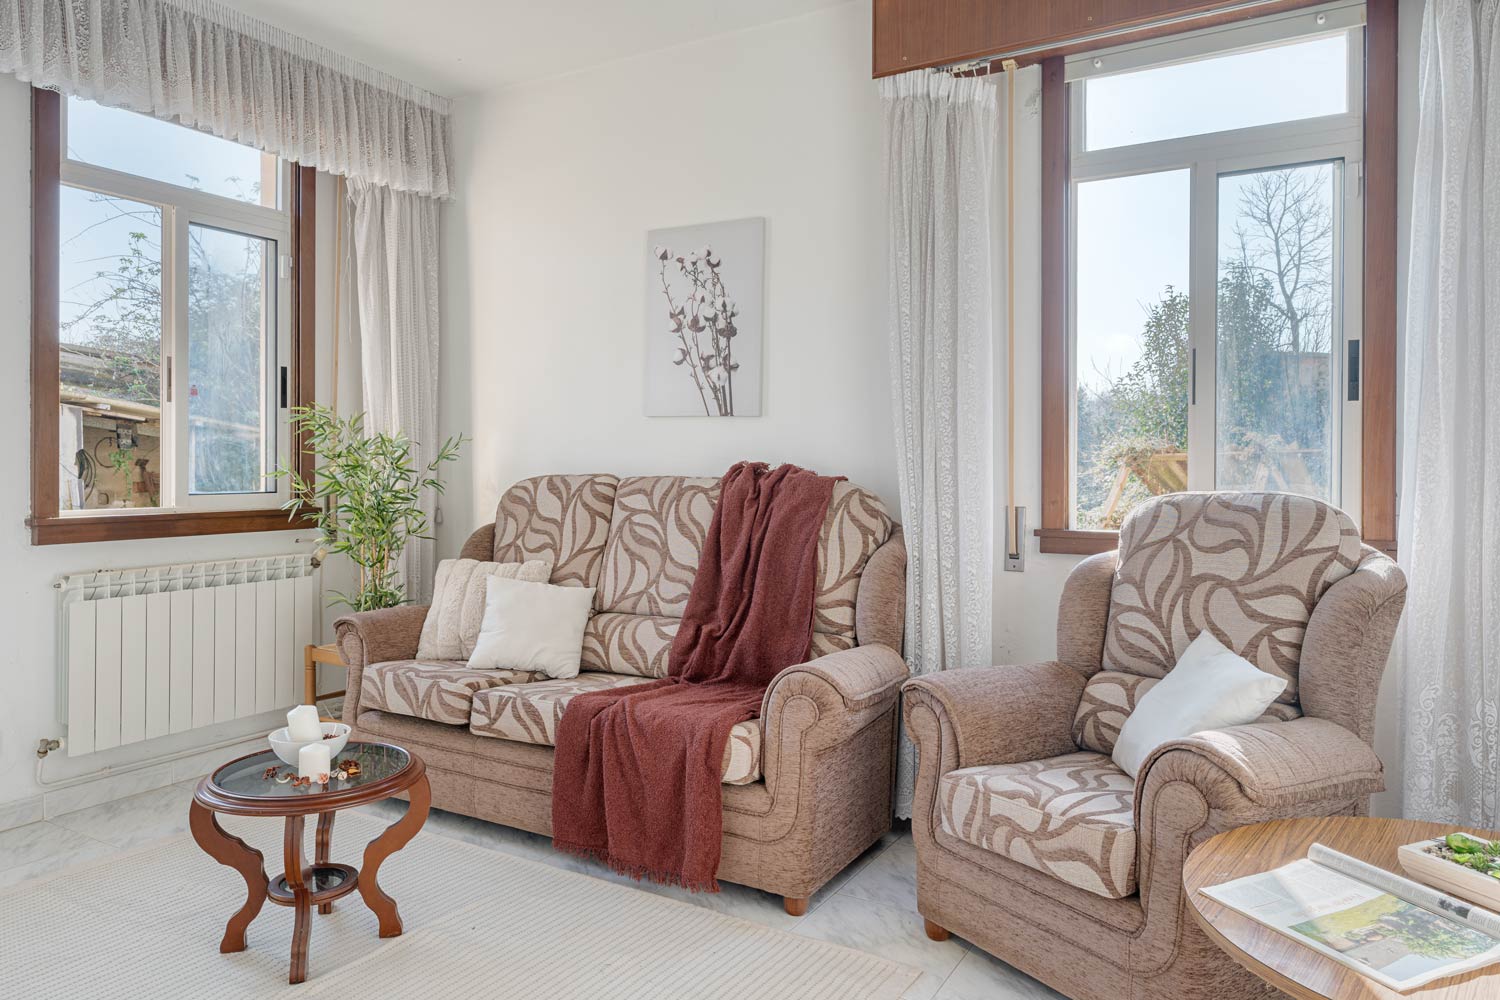 Sala de estar luminosa con sofá y sillones estampados y ventana con vistas al jardín.